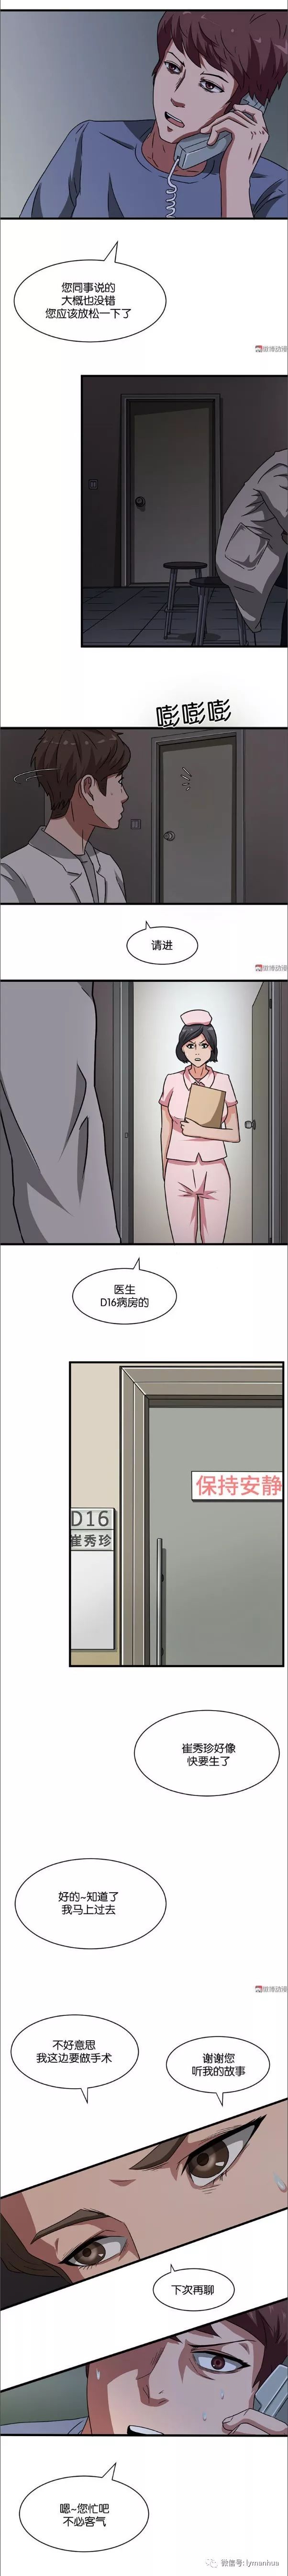 【驚悚漫畫】婦產科的求救電話 靈異 第20張